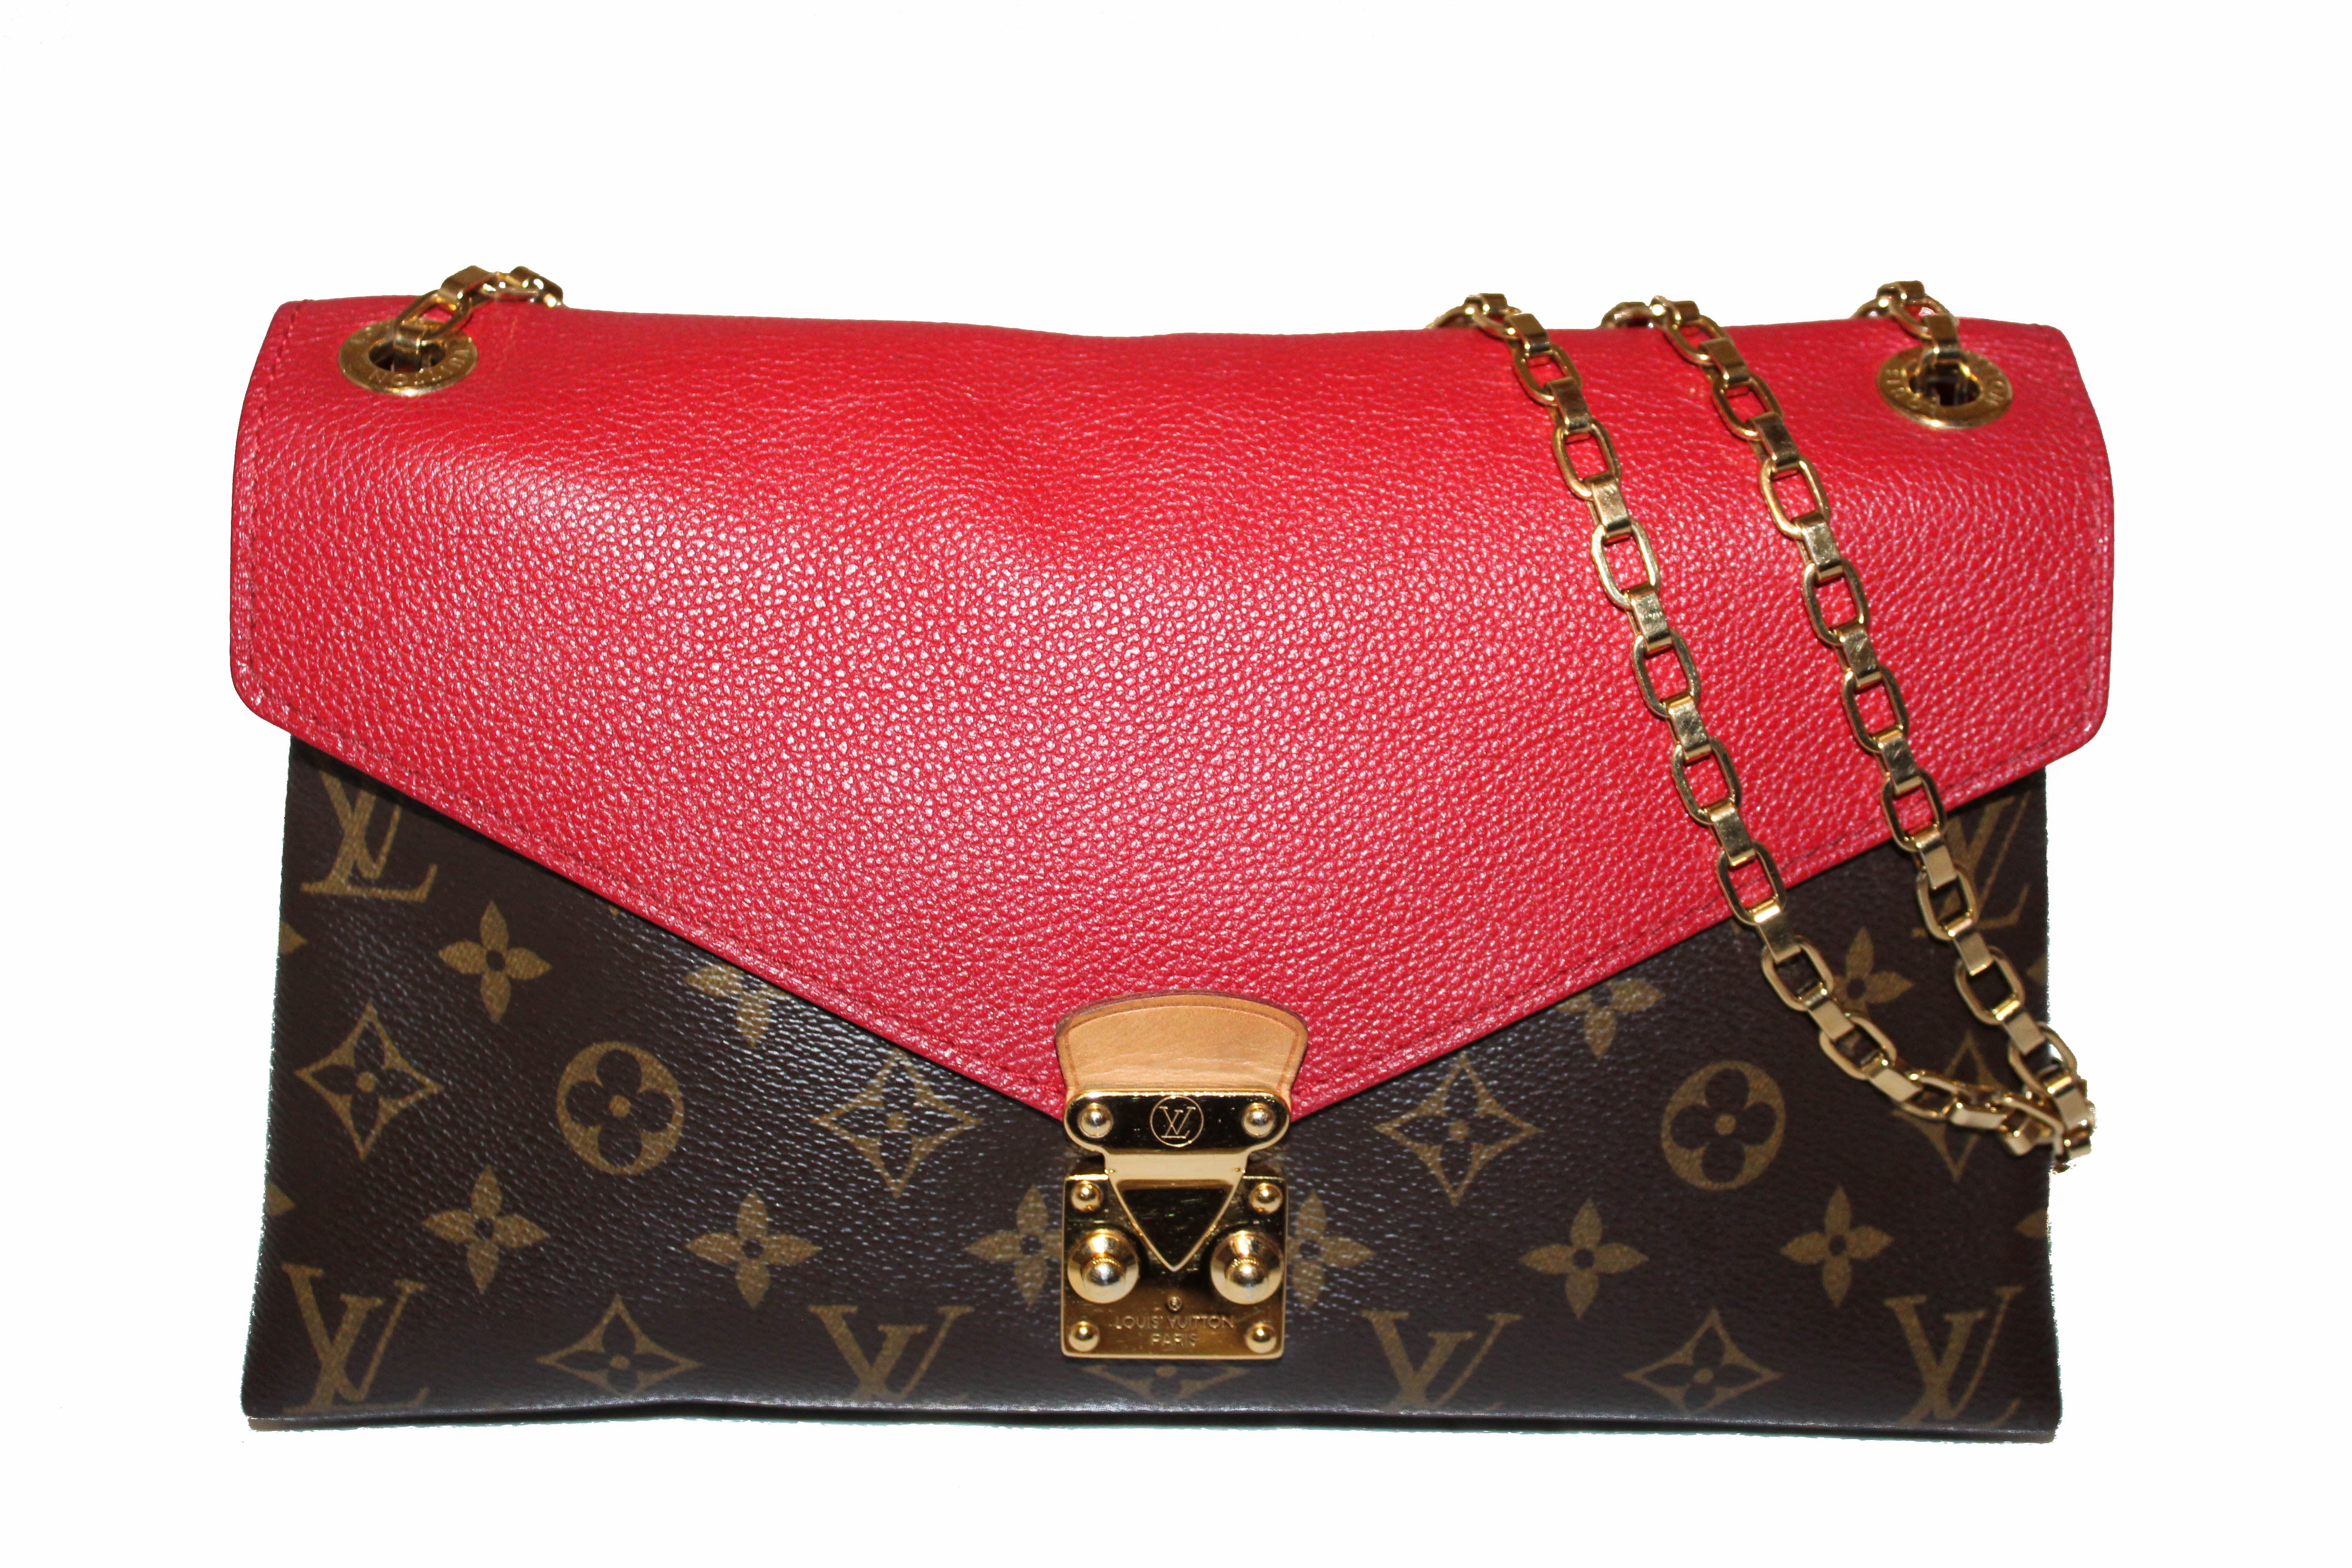 Authentic Louis Vuitton Red Monogram Pallas Chain Shoulder Bag – Paris